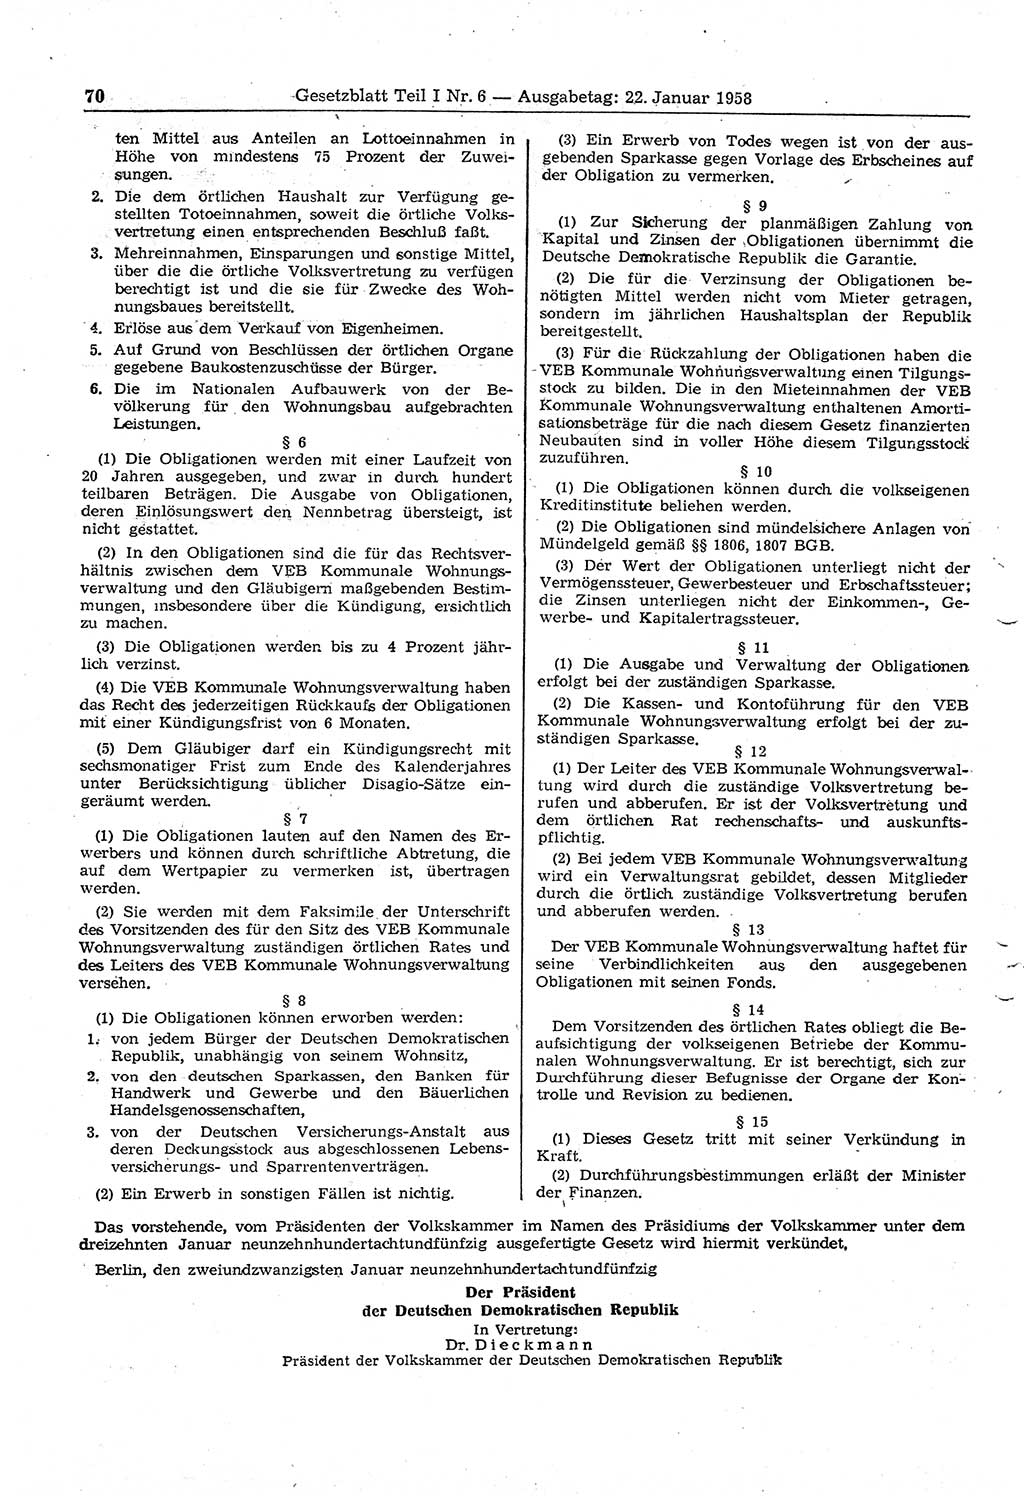 Gesetzblatt (GBl.) der Deutschen Demokratischen Republik (DDR) Teil Ⅰ 1958, Seite 70 (GBl. DDR Ⅰ 1958, S. 70)